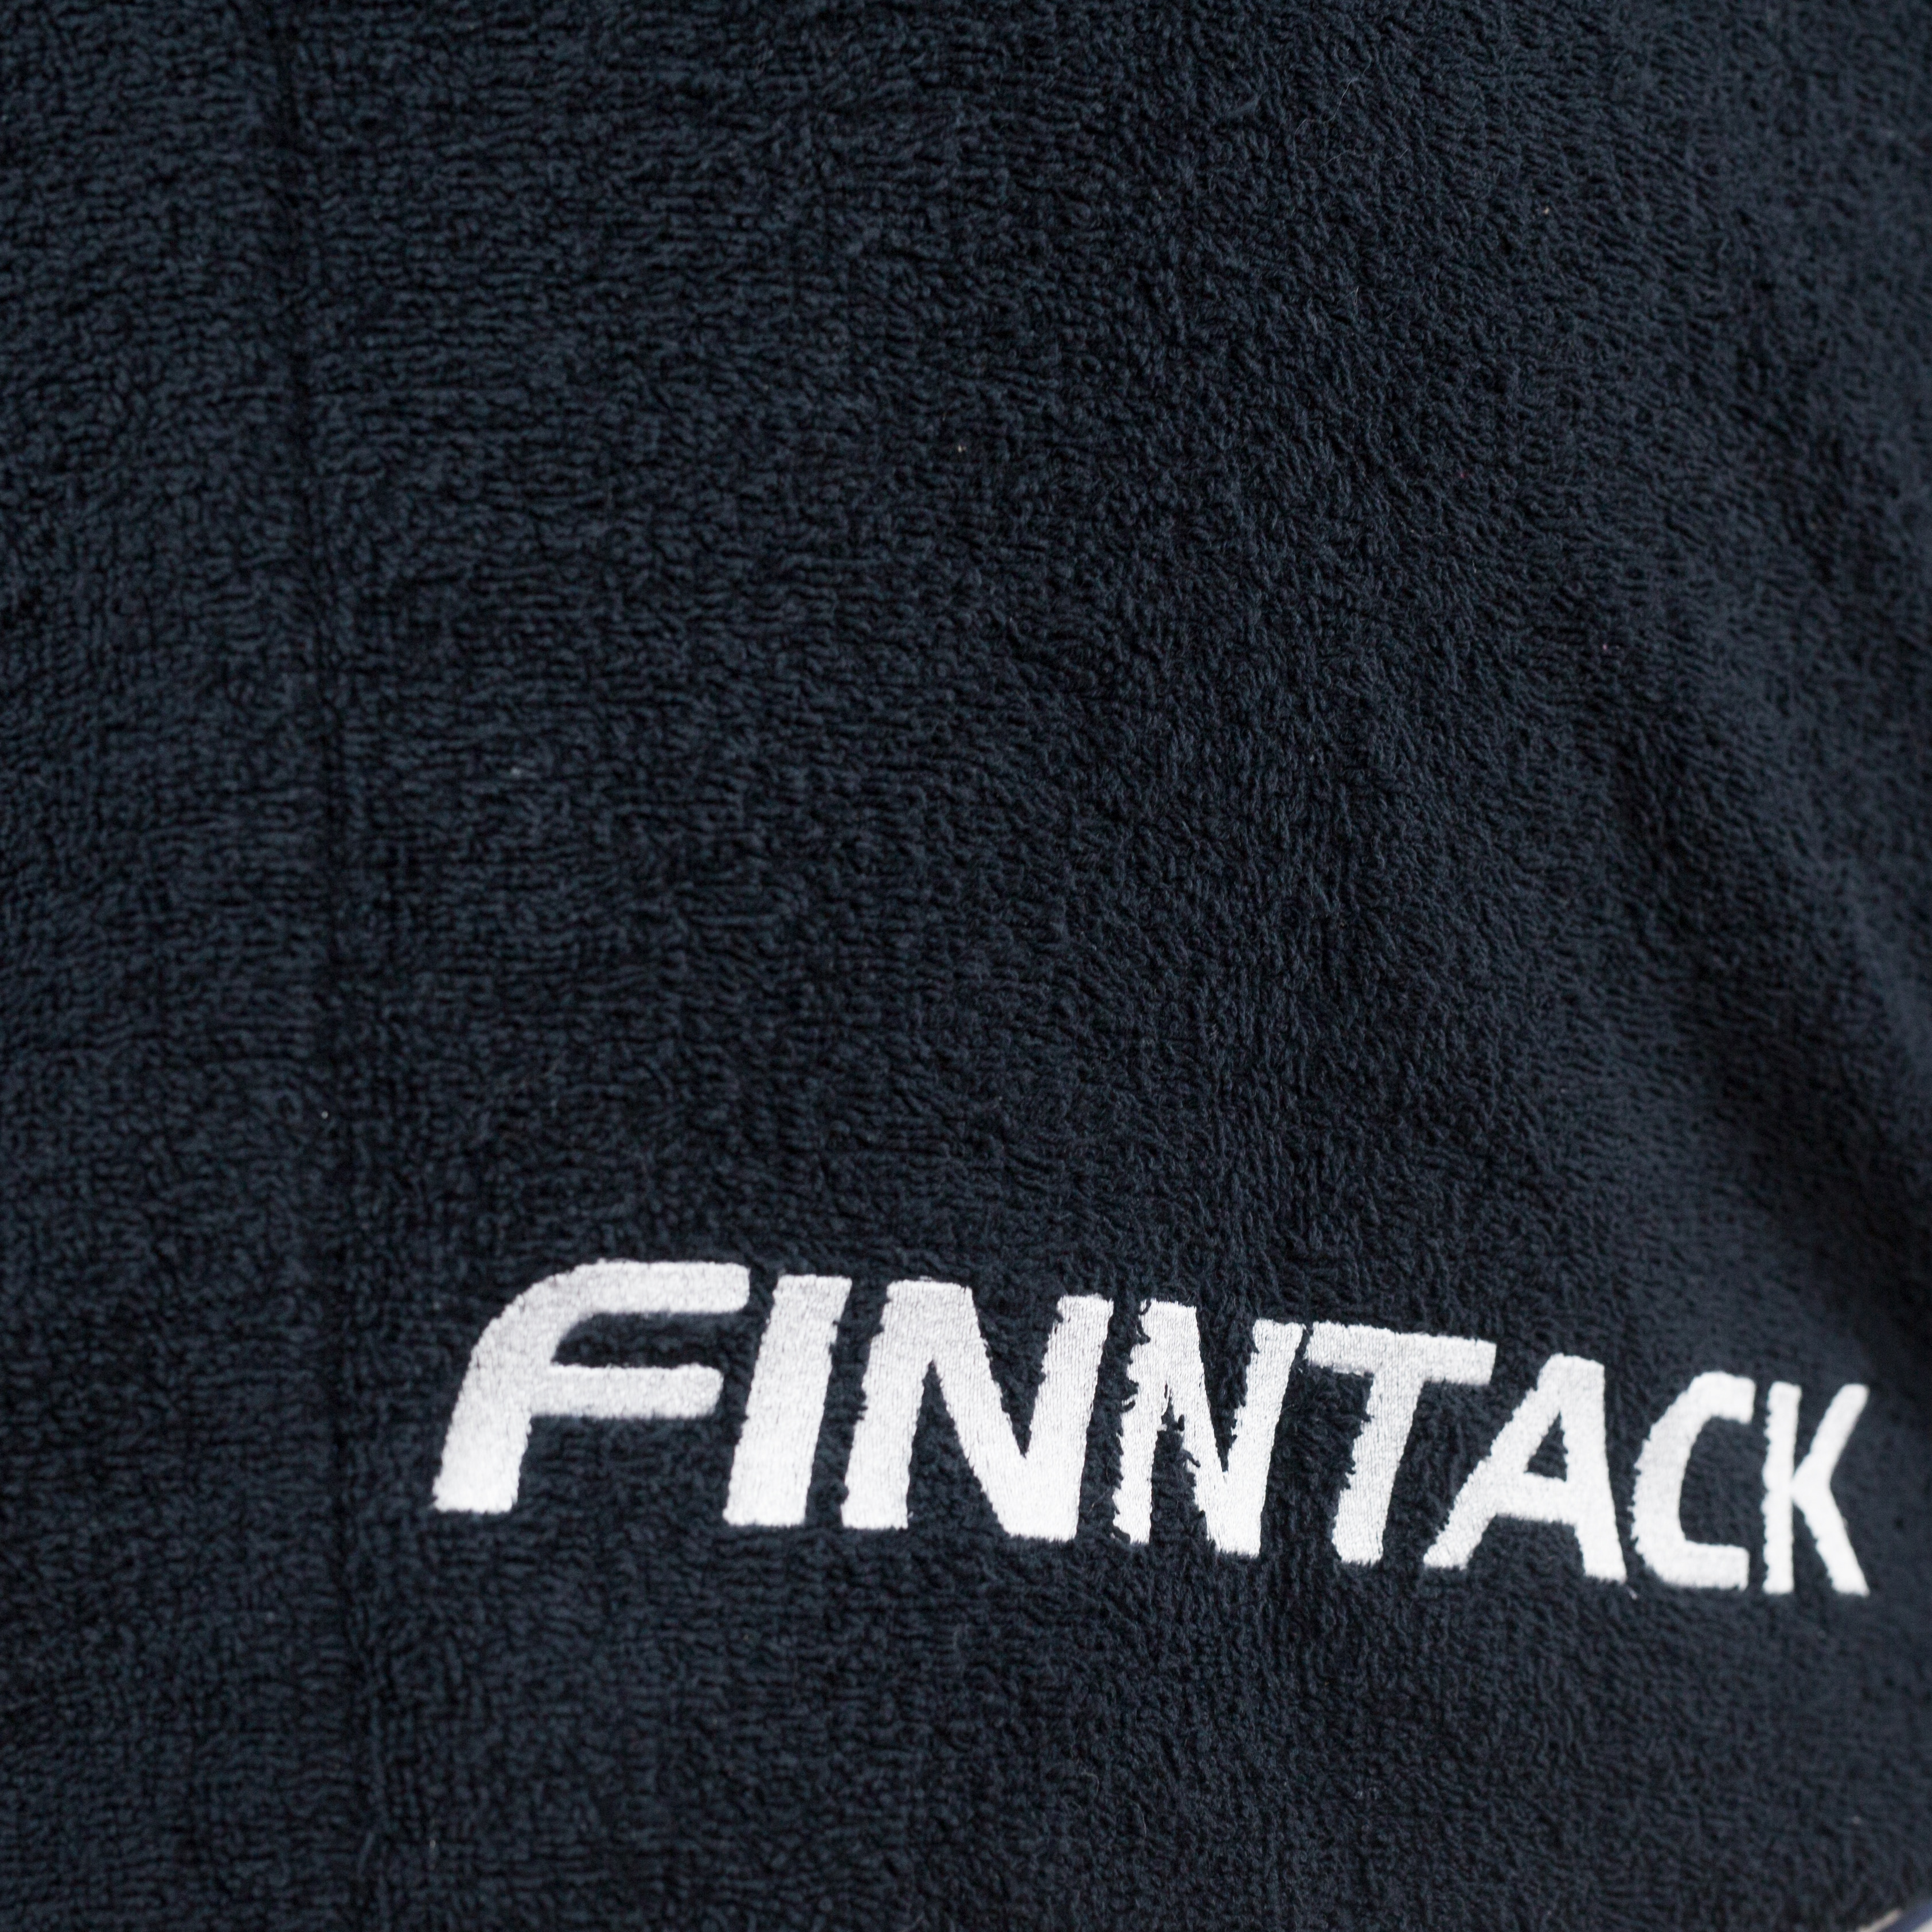 Finntack Pro Towel -loimi